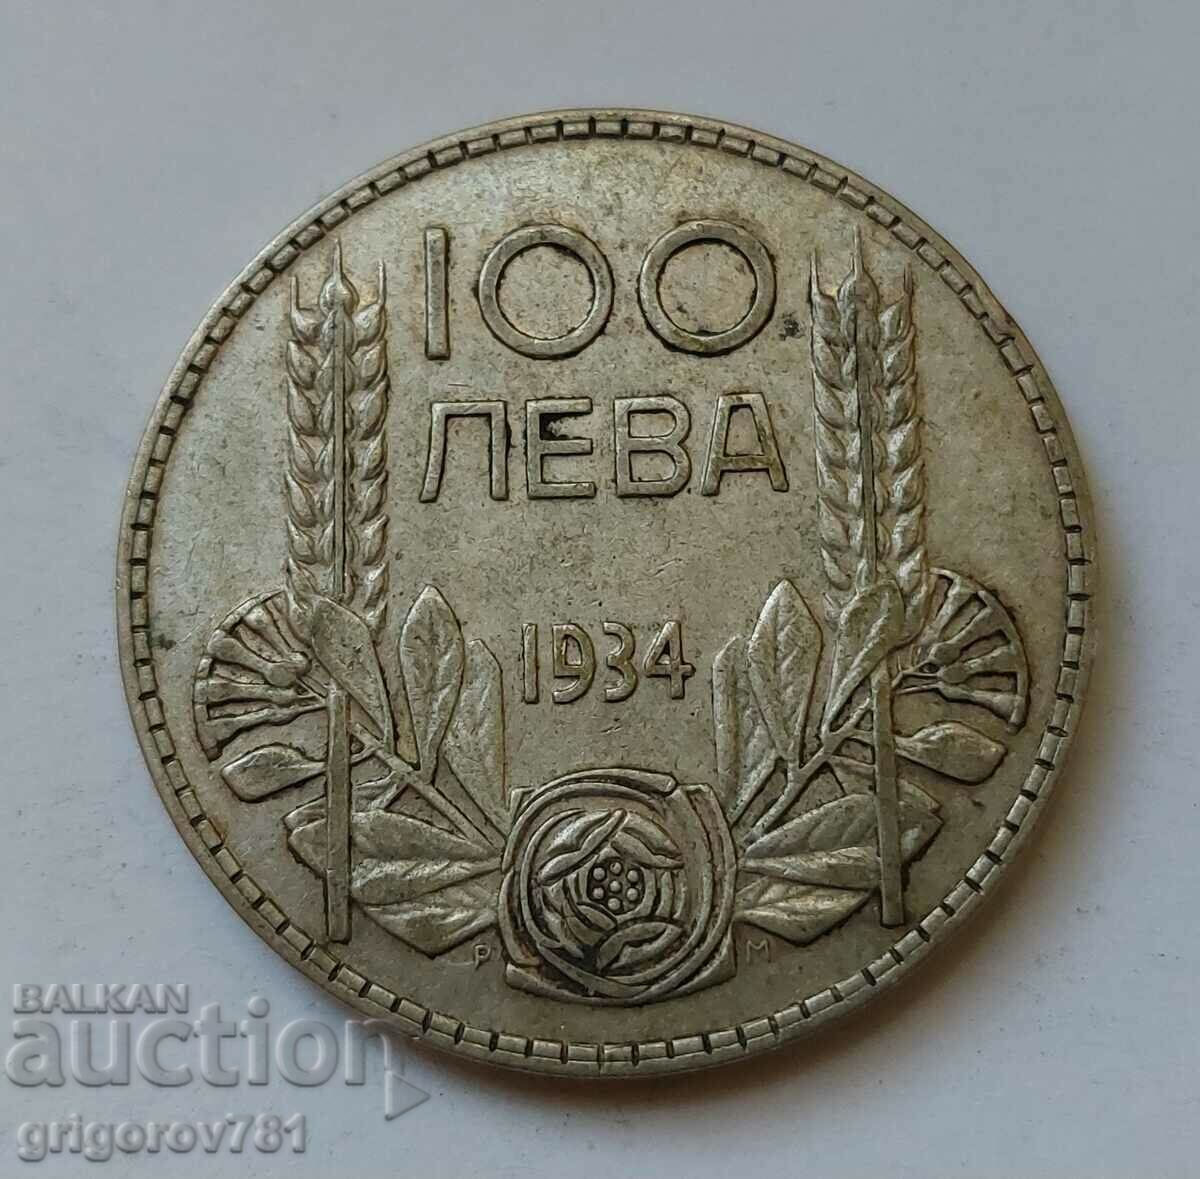 100 leva silver Bulgaria 1934 - silver coin #118